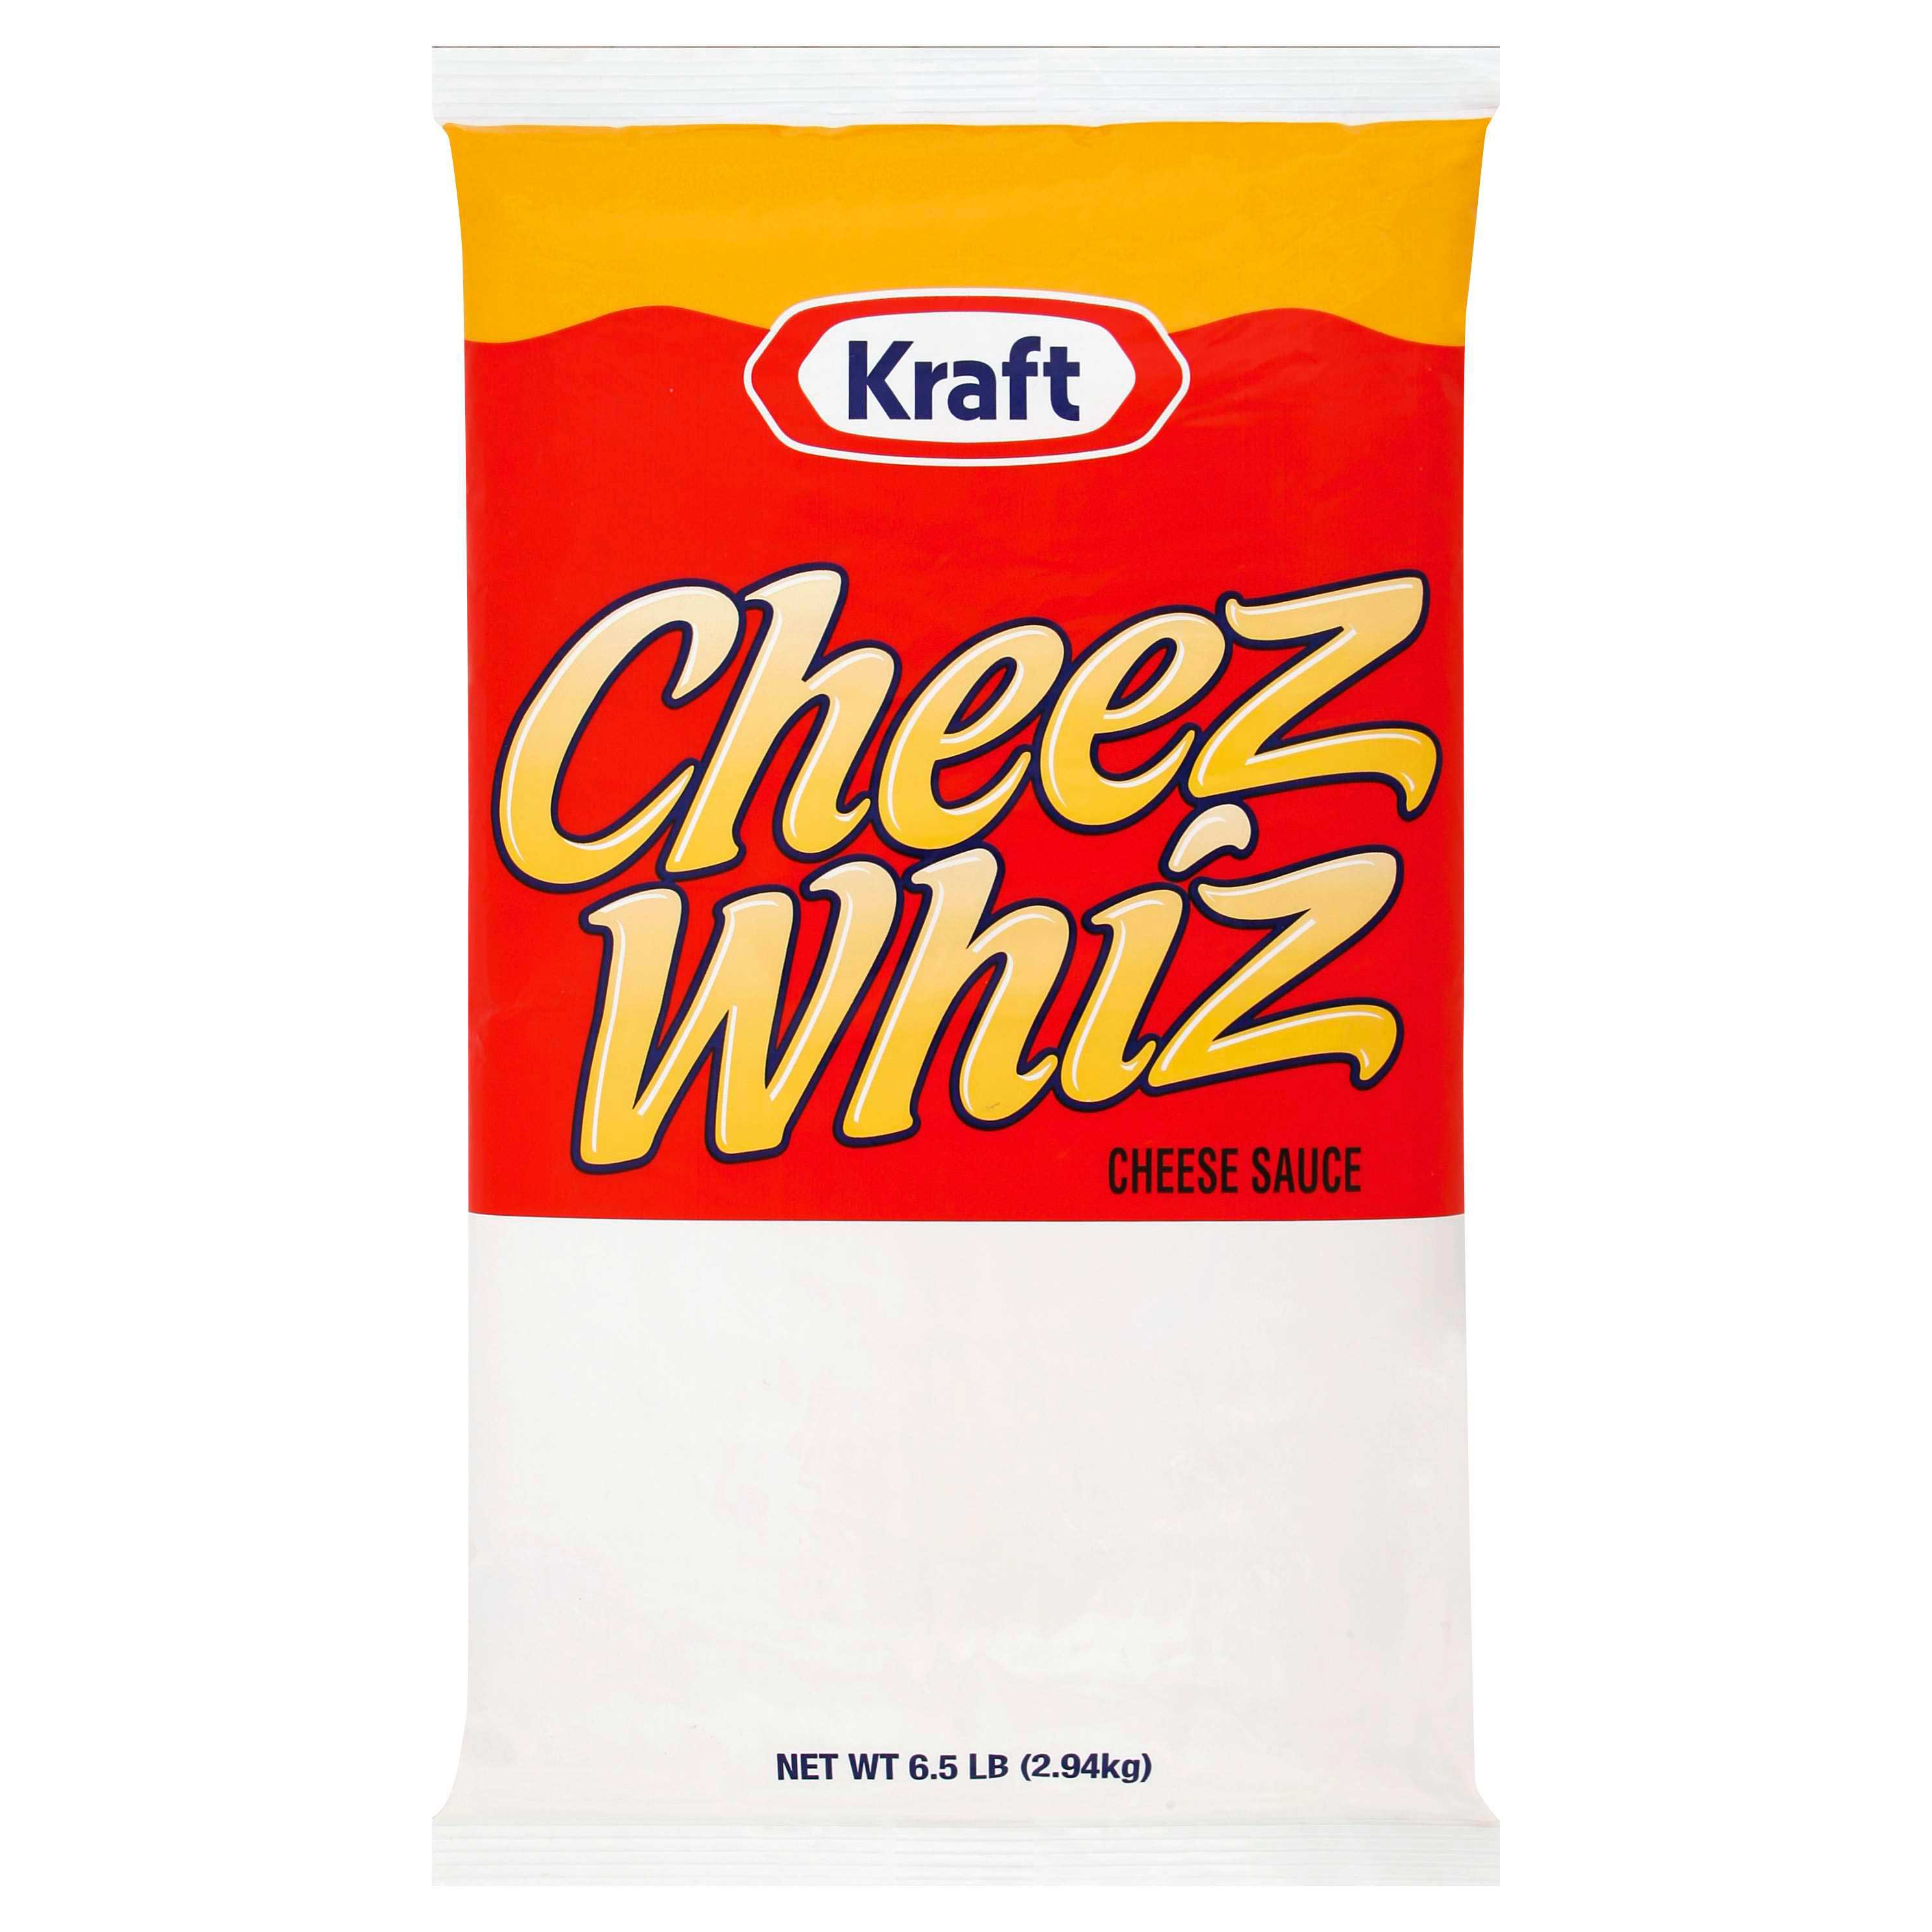 Cheez Whiz Original Cheese Sauce, 6.5 Pound Pouch -- 6 per case.